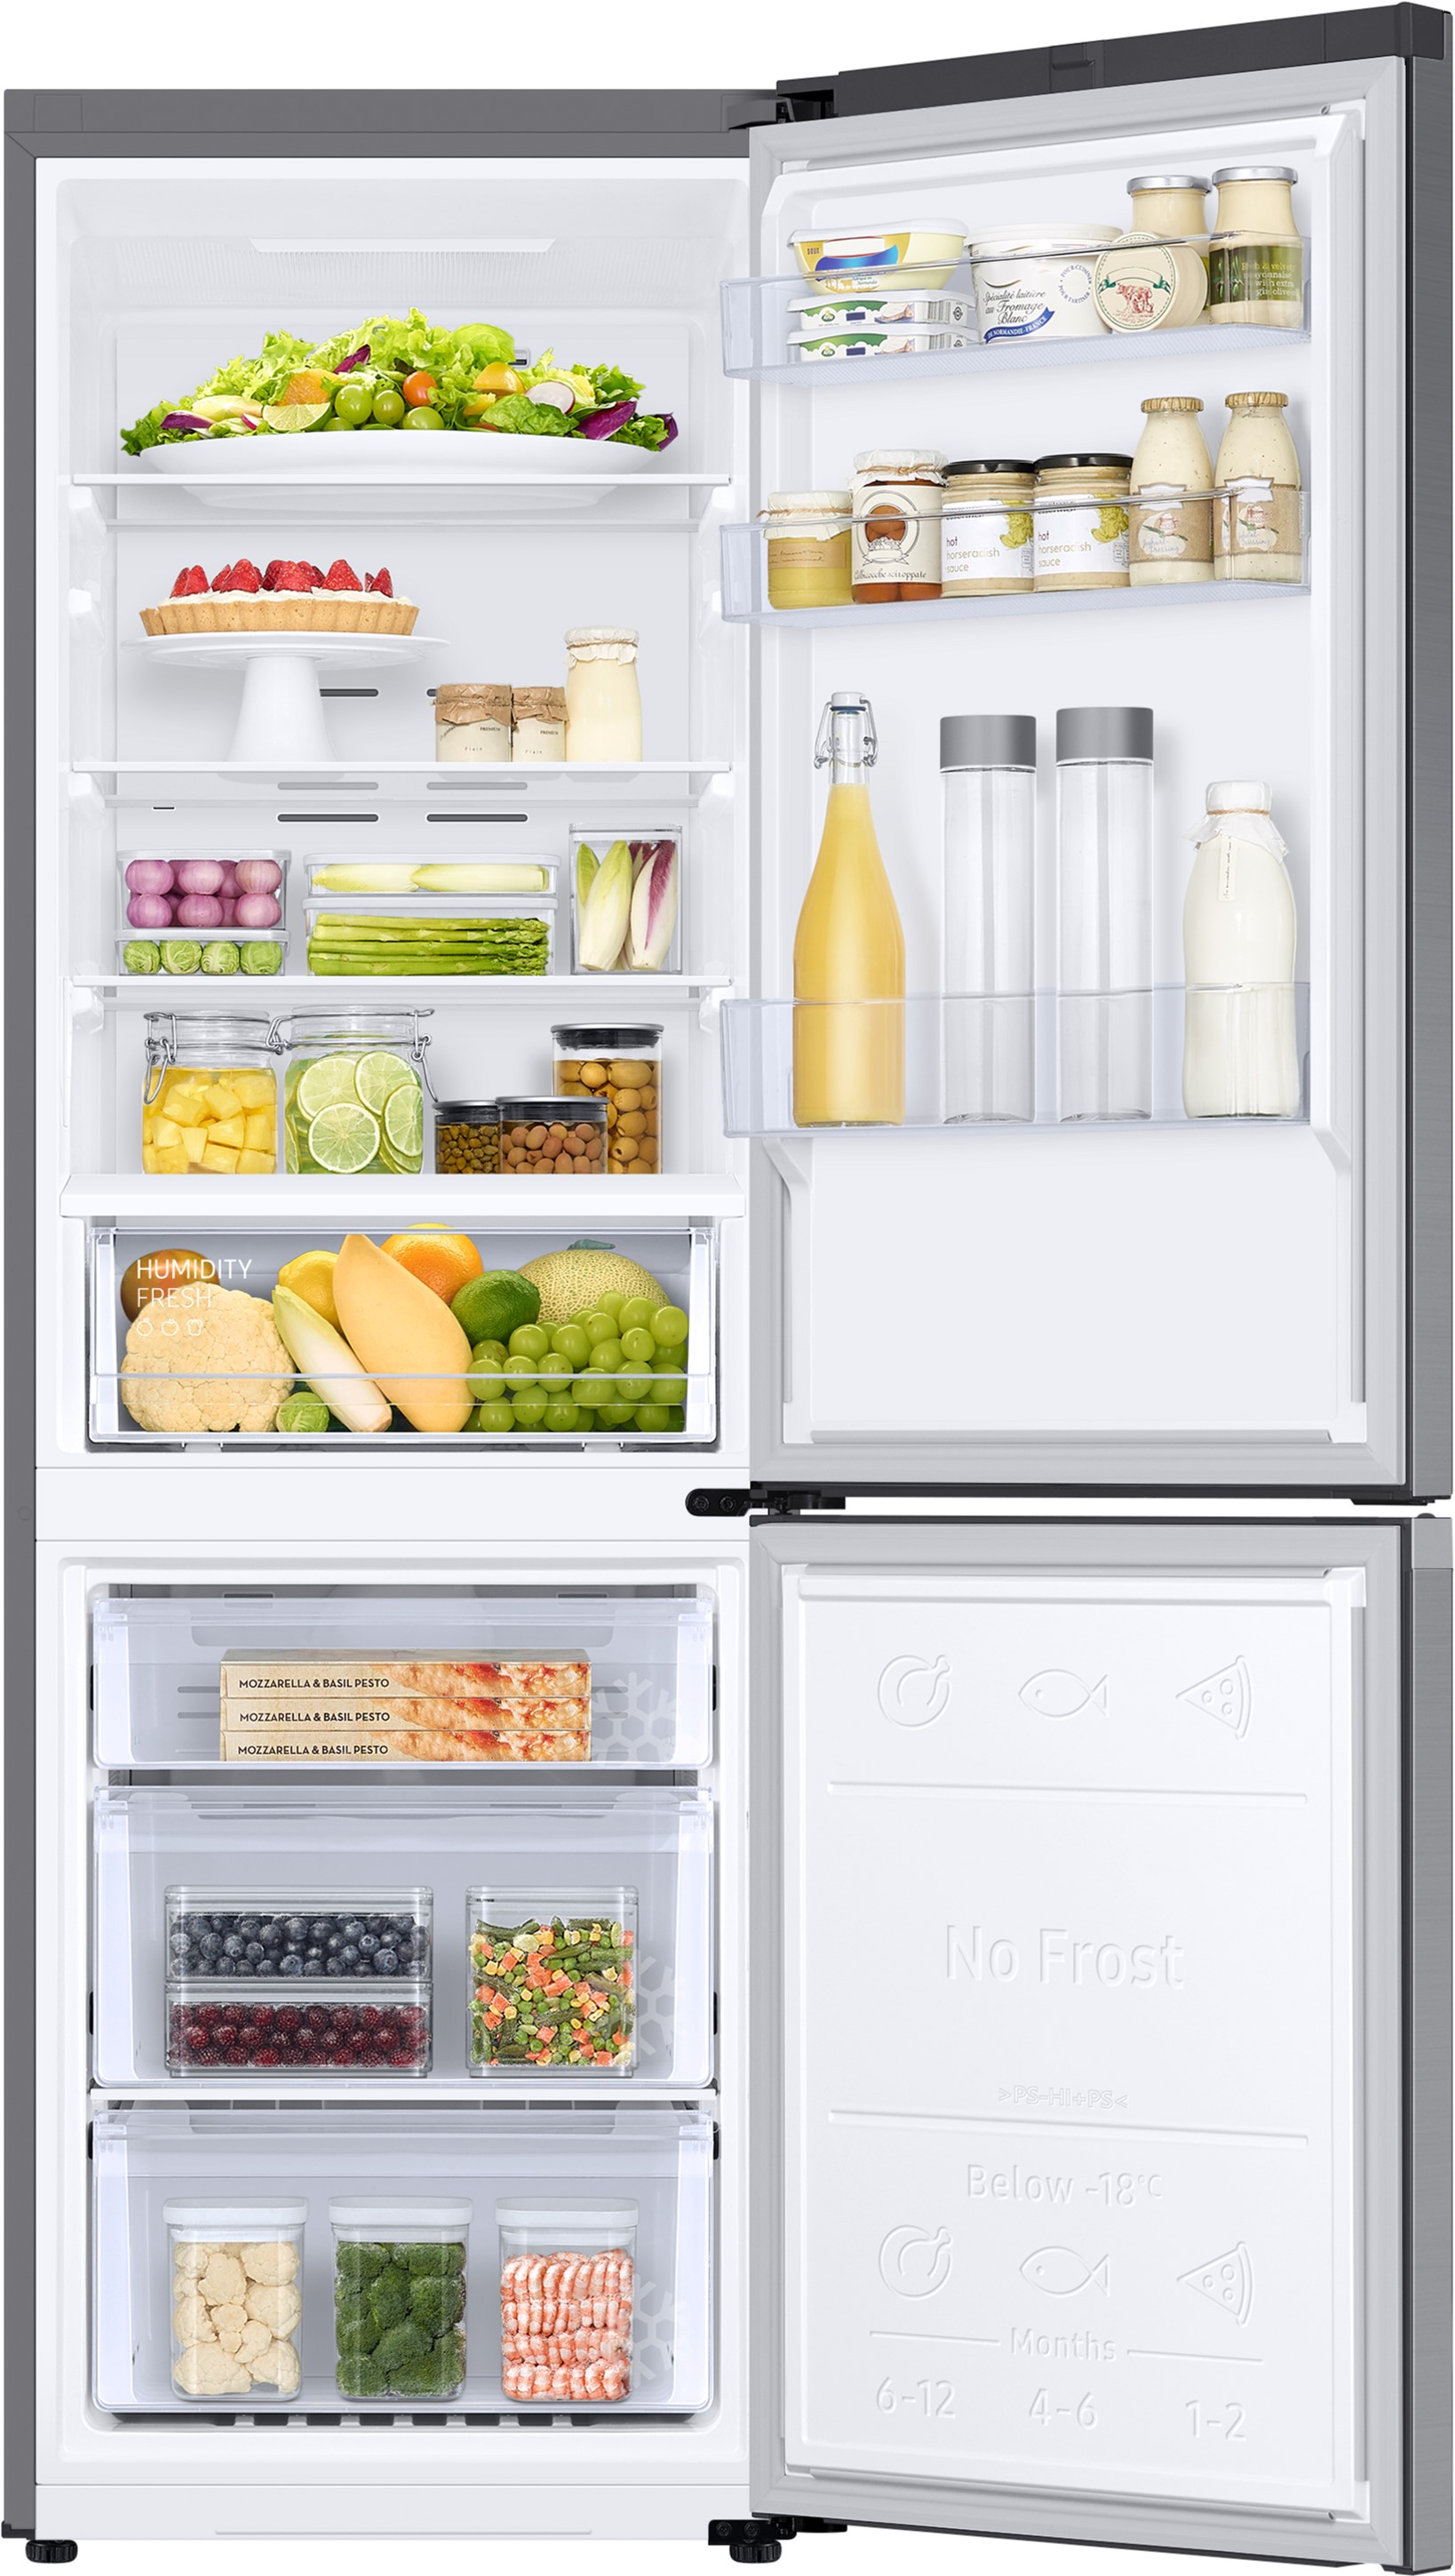 Холодильник Samsung RB34C600ES9/UA отзывы - изображения 5